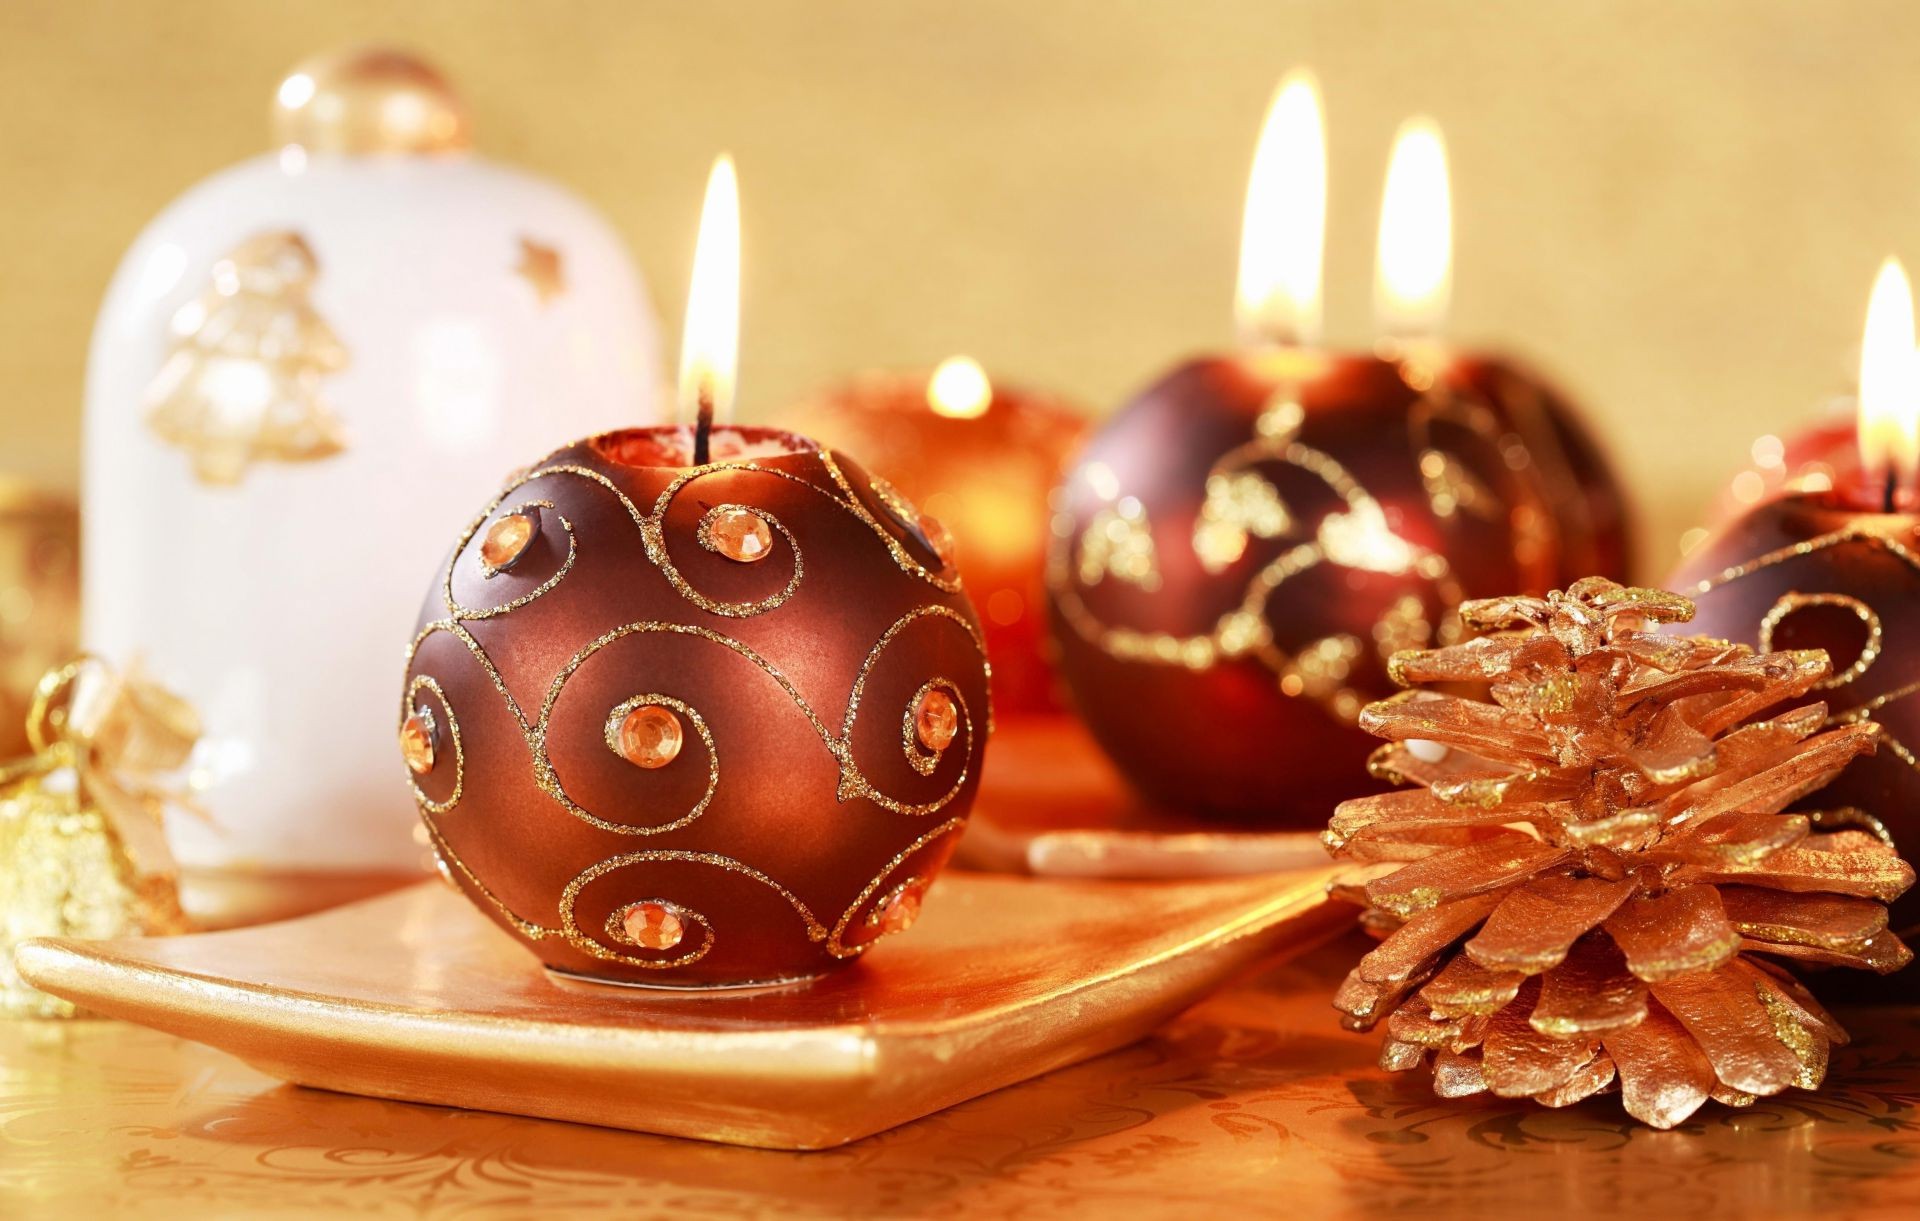 новый год свеча рождество украшения праздник свечи традиционные появлением зима шоколад